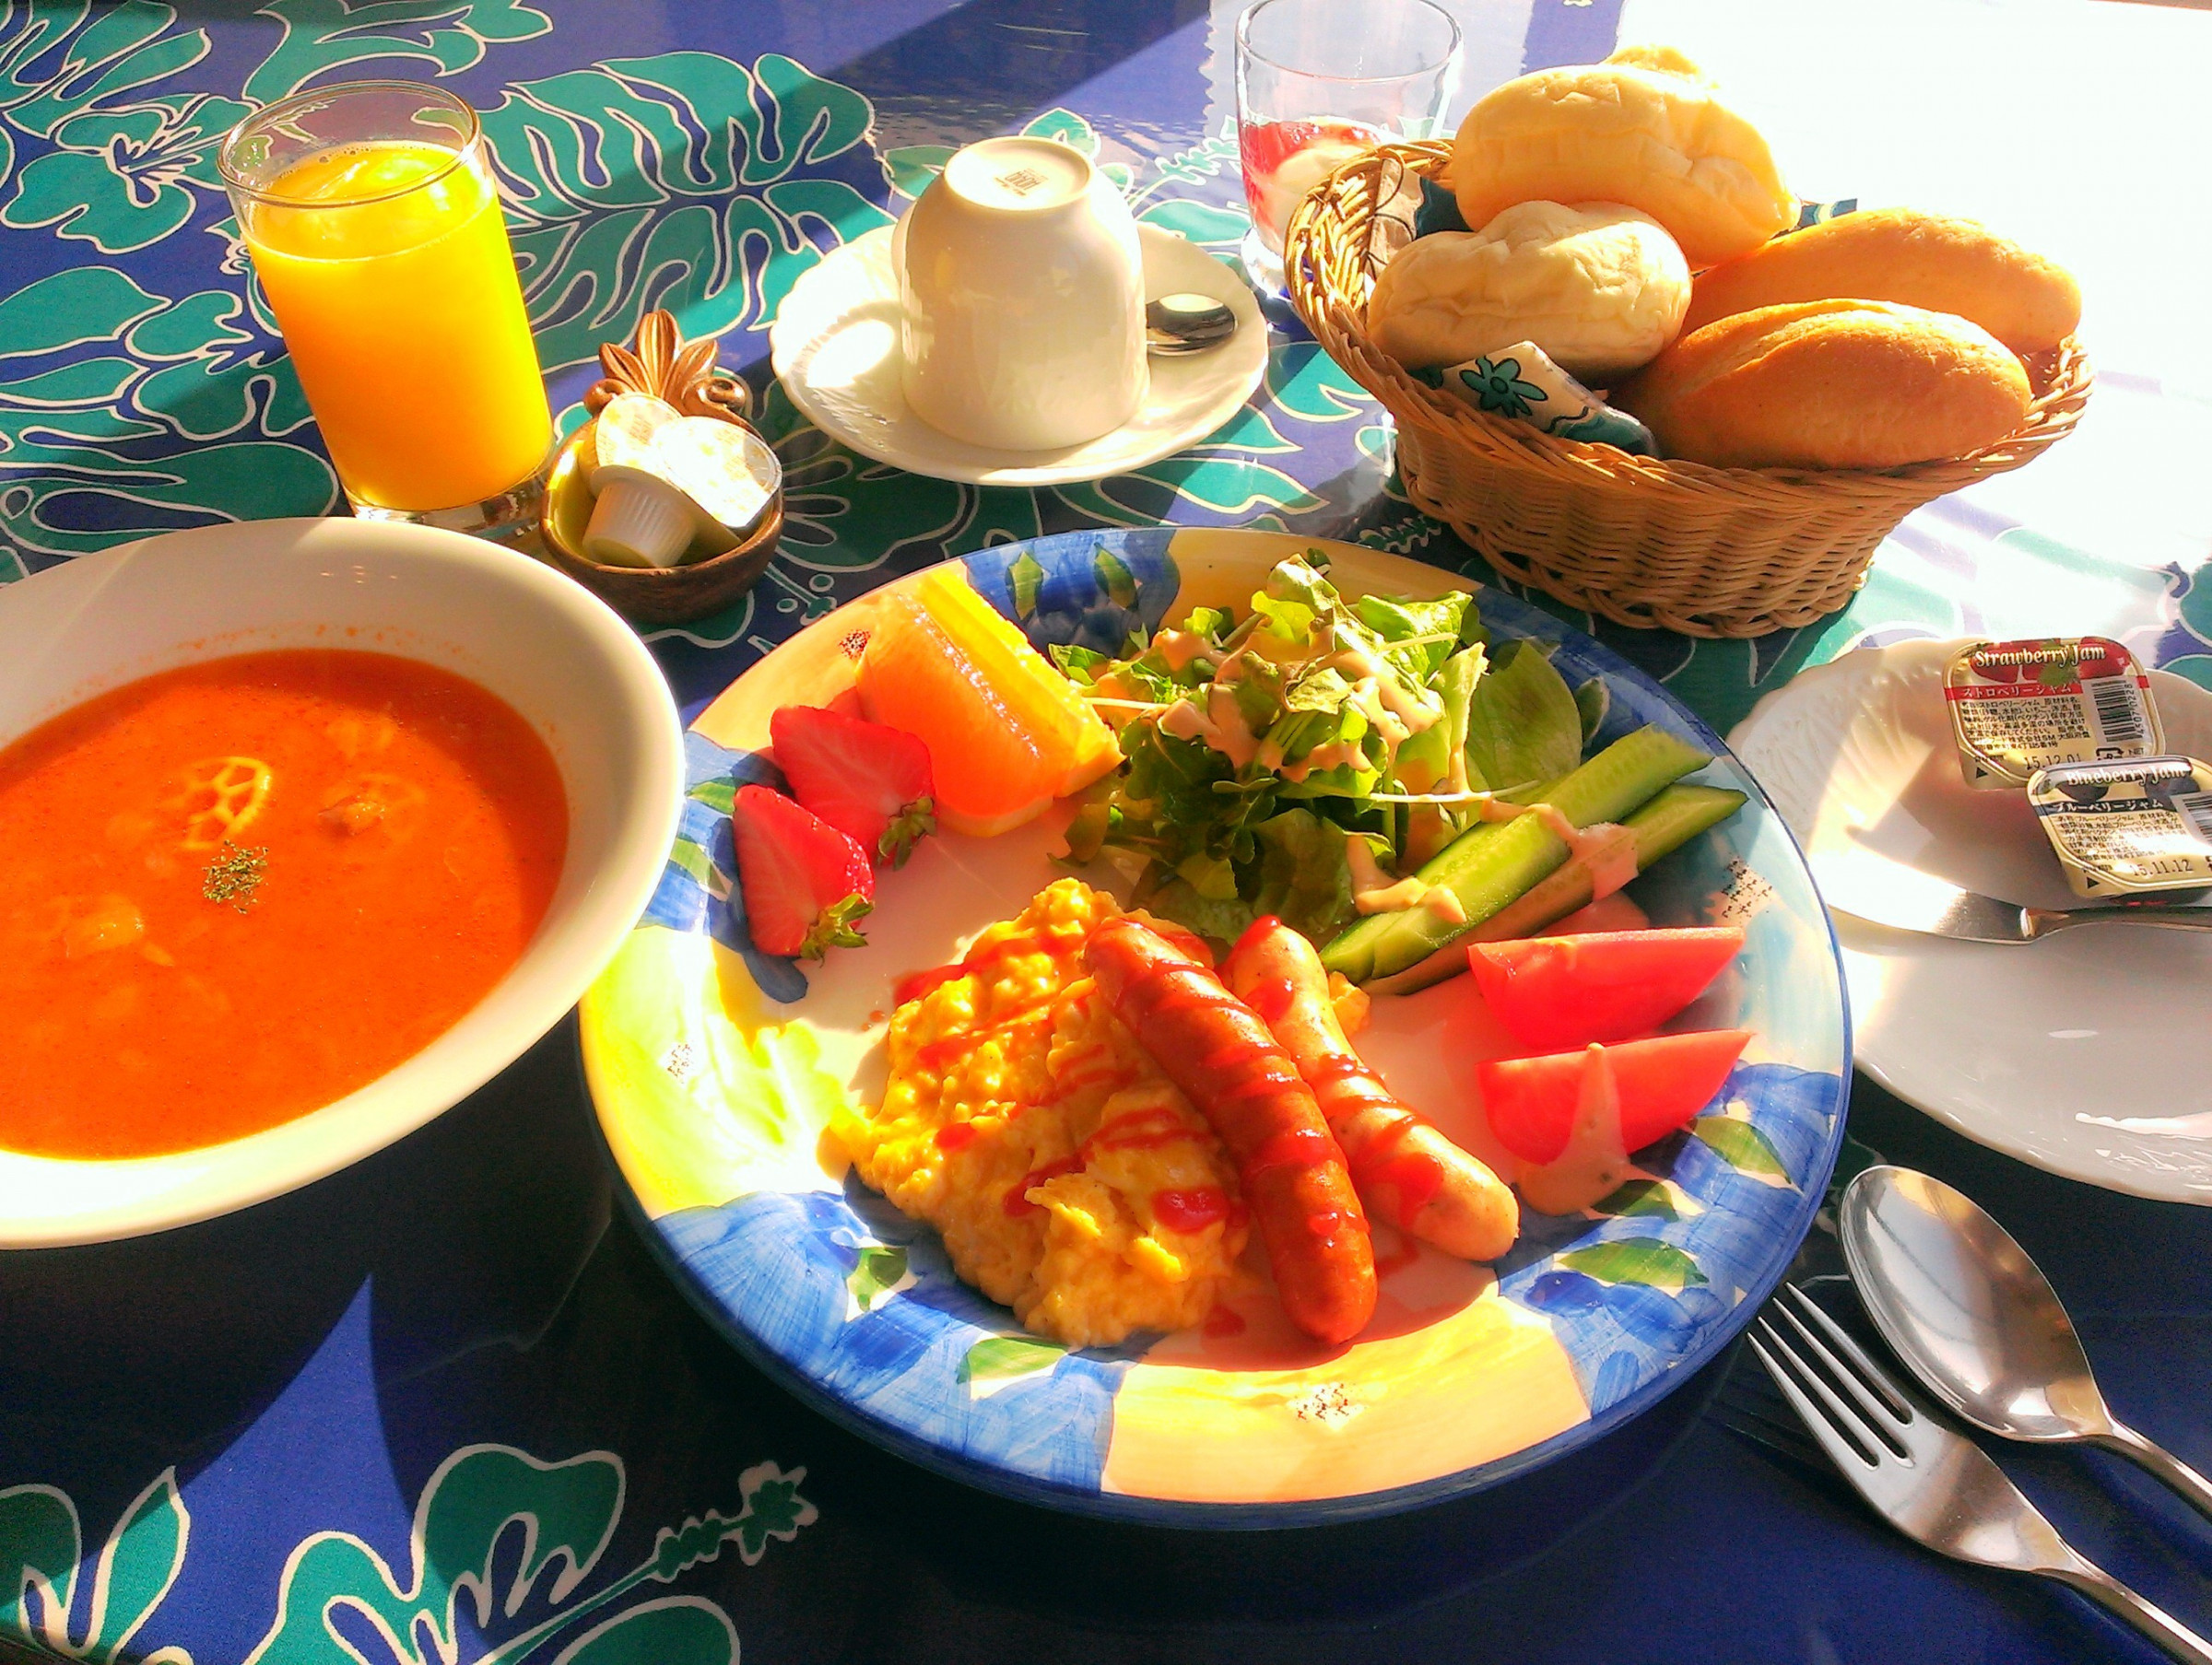 朝はコンチネンタル♪ジュース・スープ・玉子・サラダ・果物・ヨーグルト・コーヒー紅茶・温かパン食べ放題